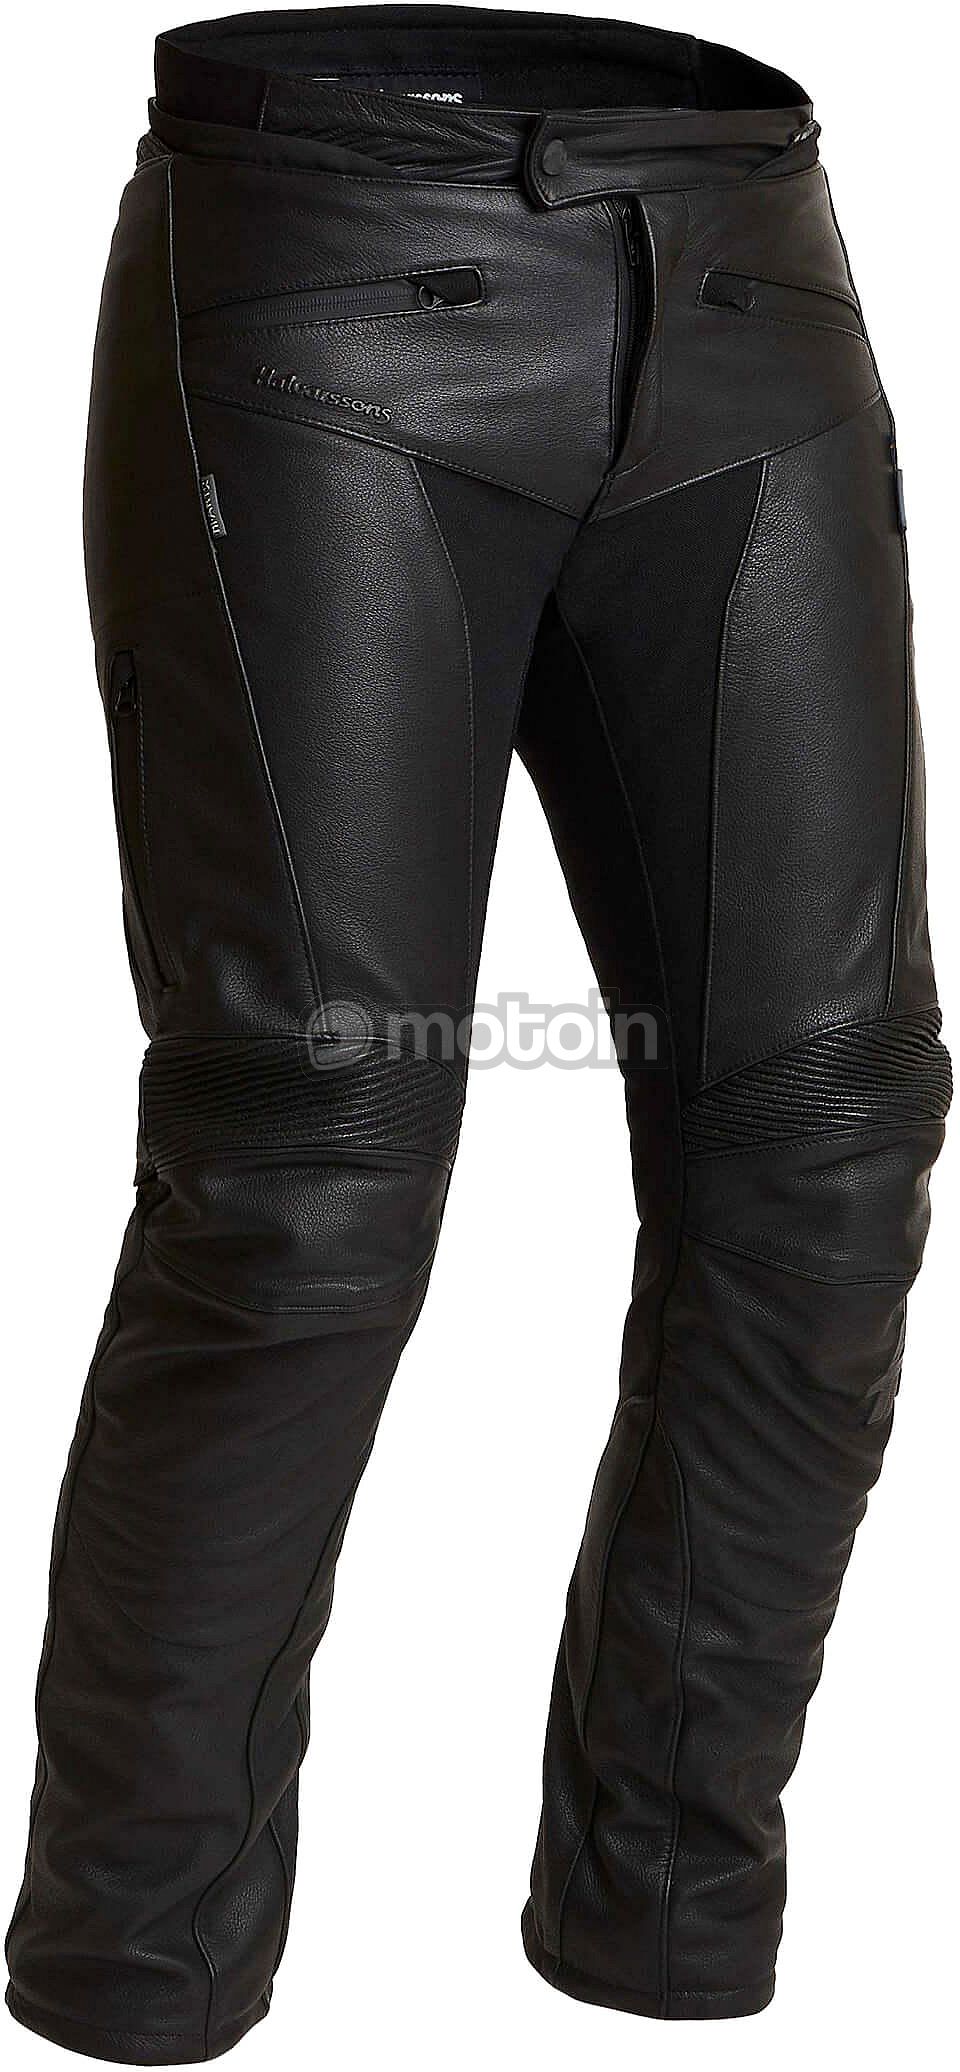 Halvarssons Oxberg, leather pants waterproof women